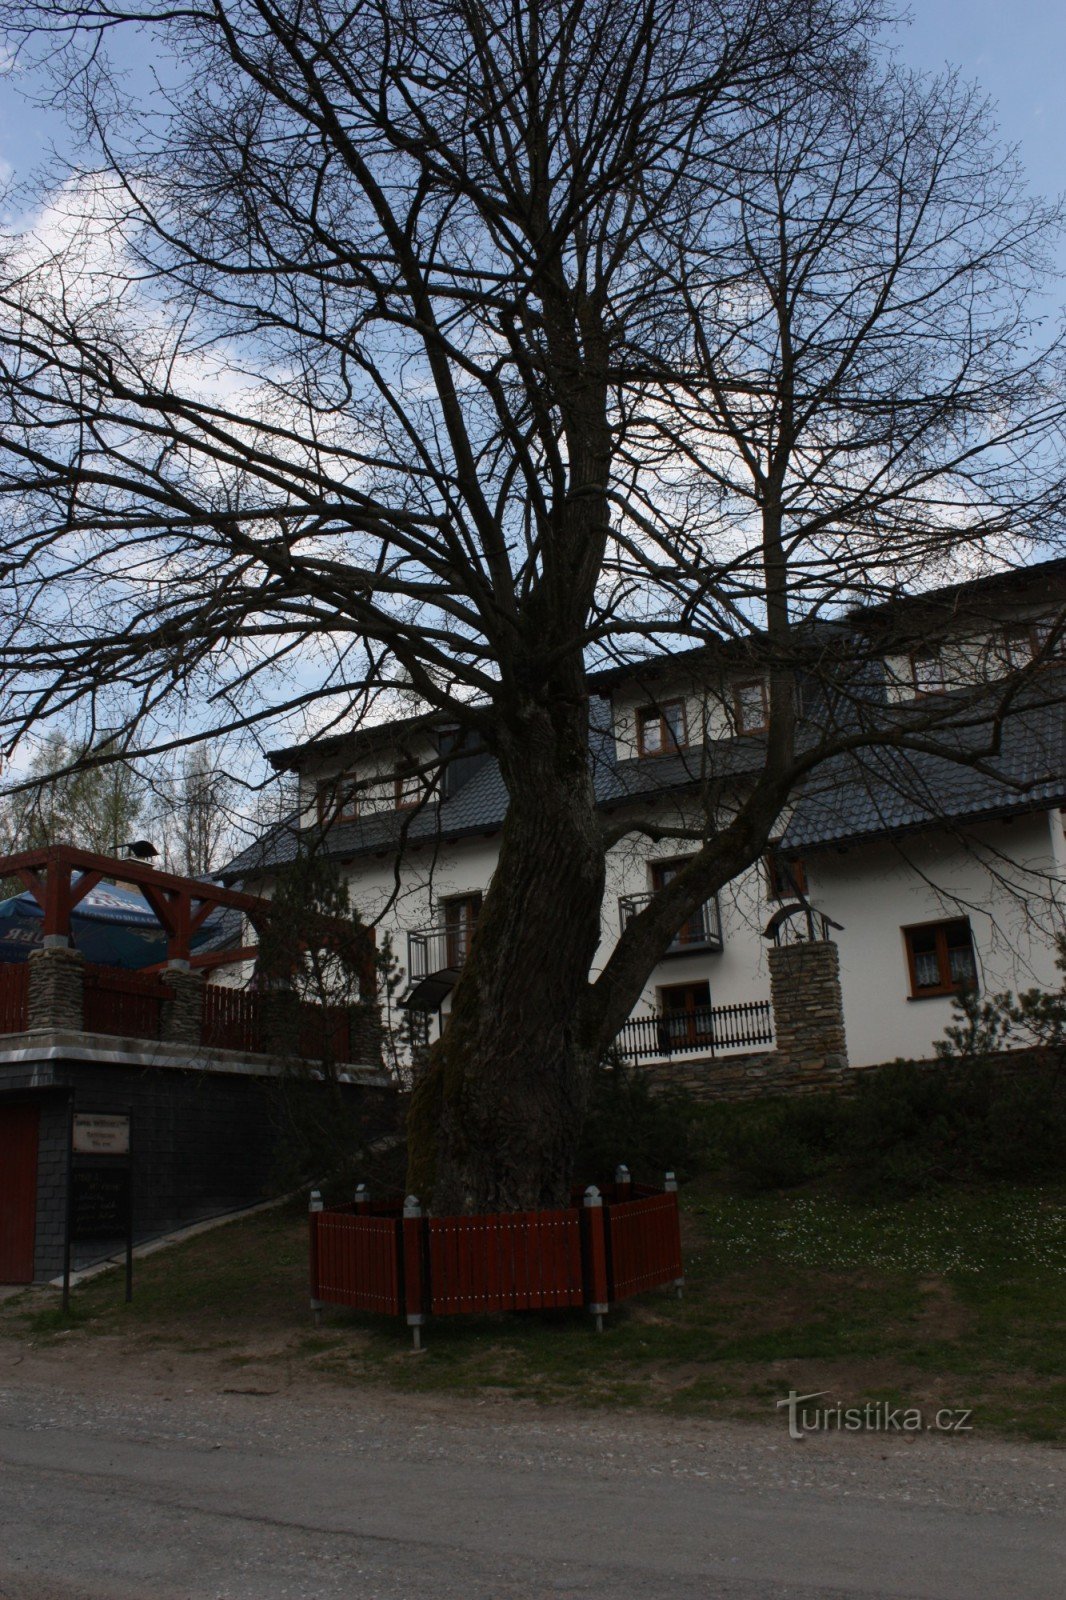 Hynčice pod Sušinou centre d'activités de ski et de cyclisme